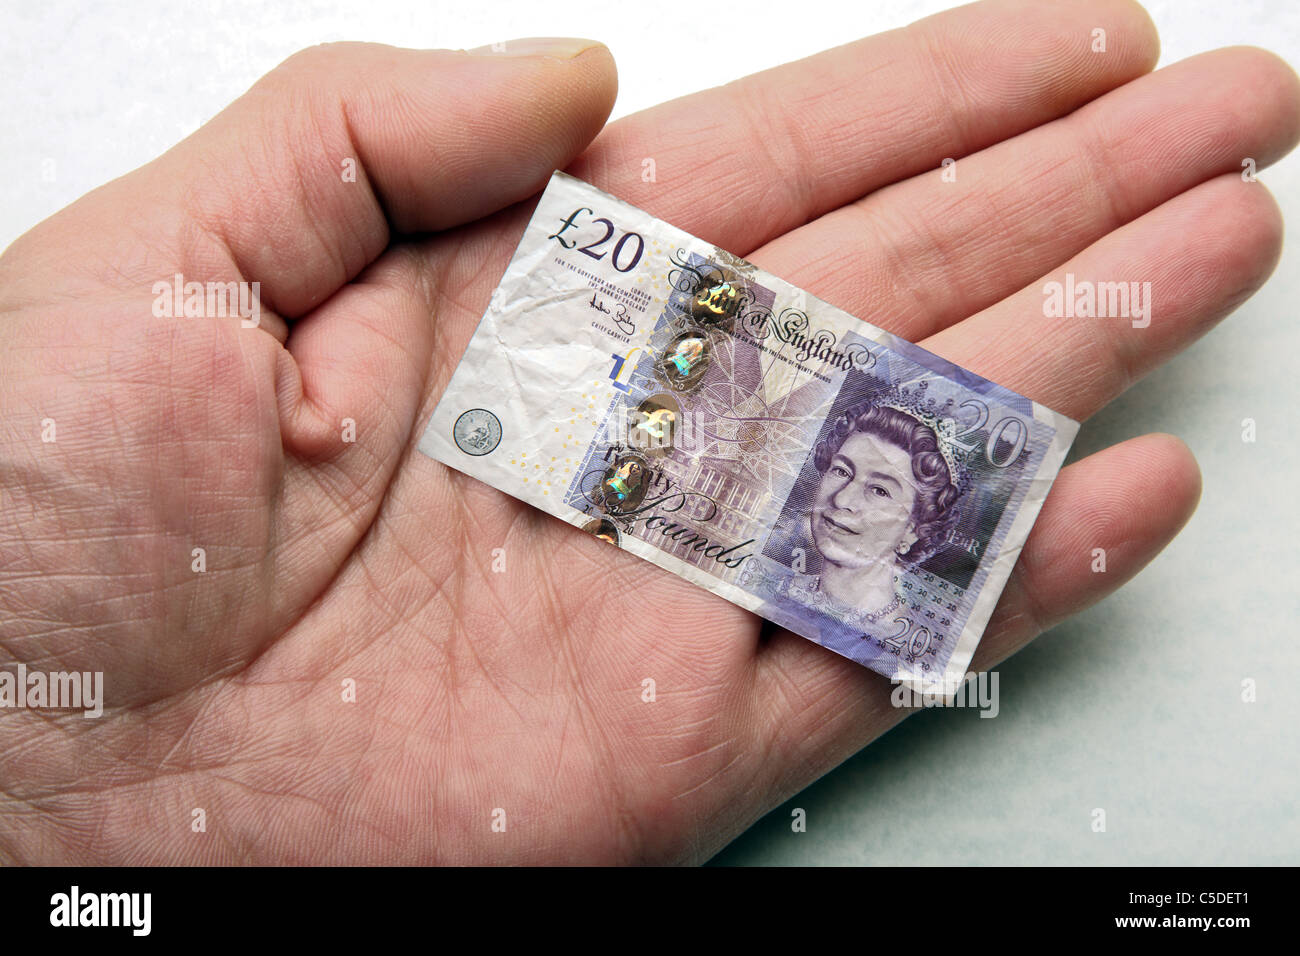 Hand holding shrunken twenty pound note. Stock Photo